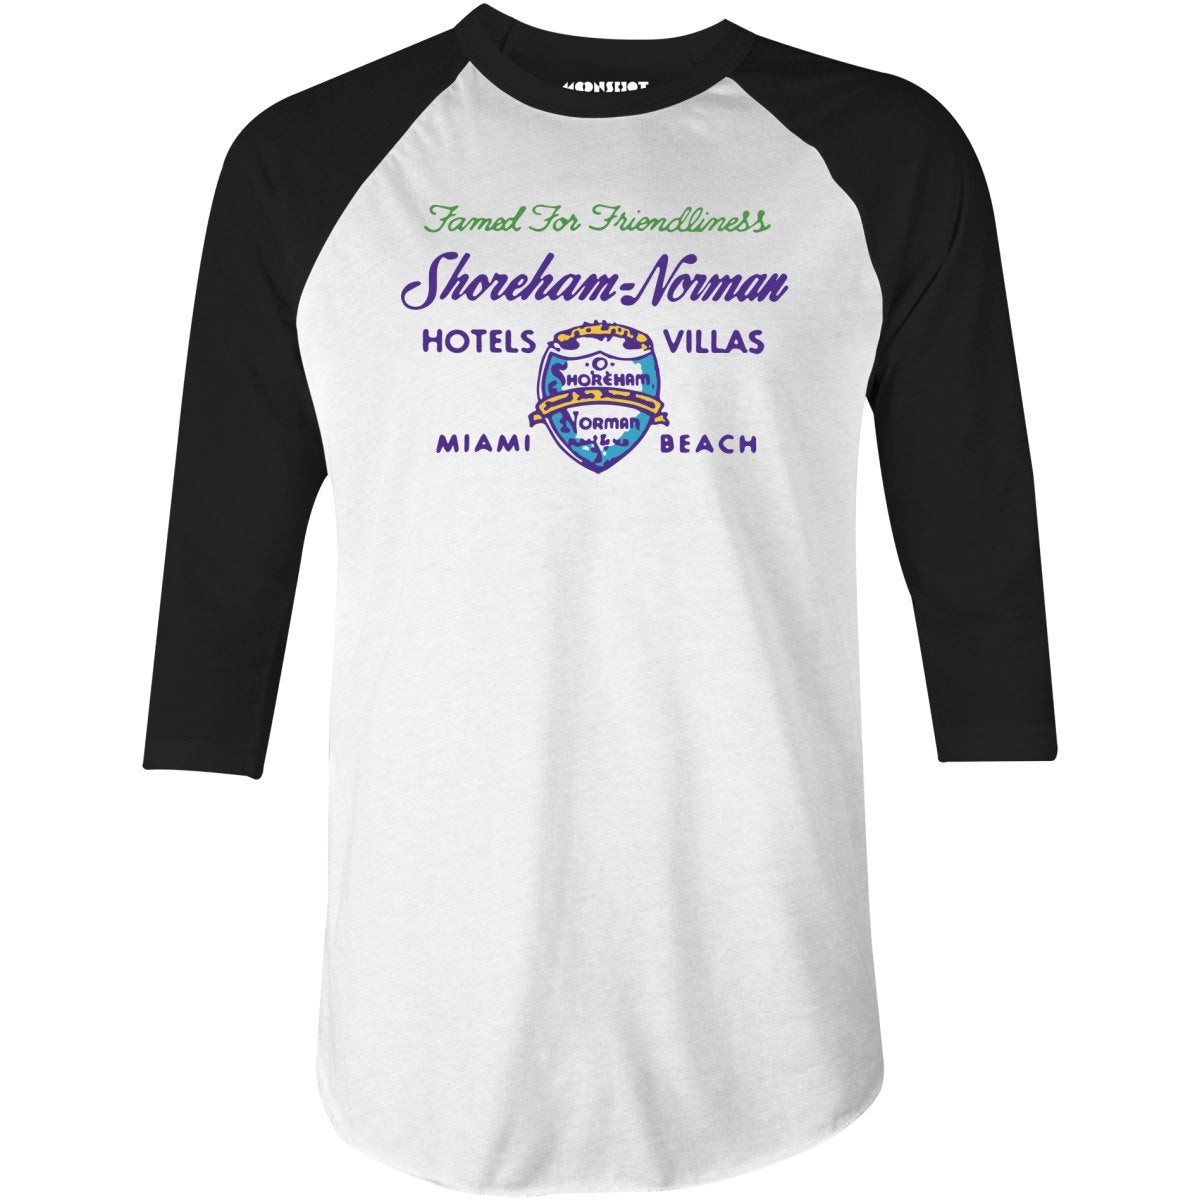 Shoreham Norman Hotels & Villas v2 - Miami, FL - Vintage Hotel - 3/4 Sleeve Raglan T-Shirt